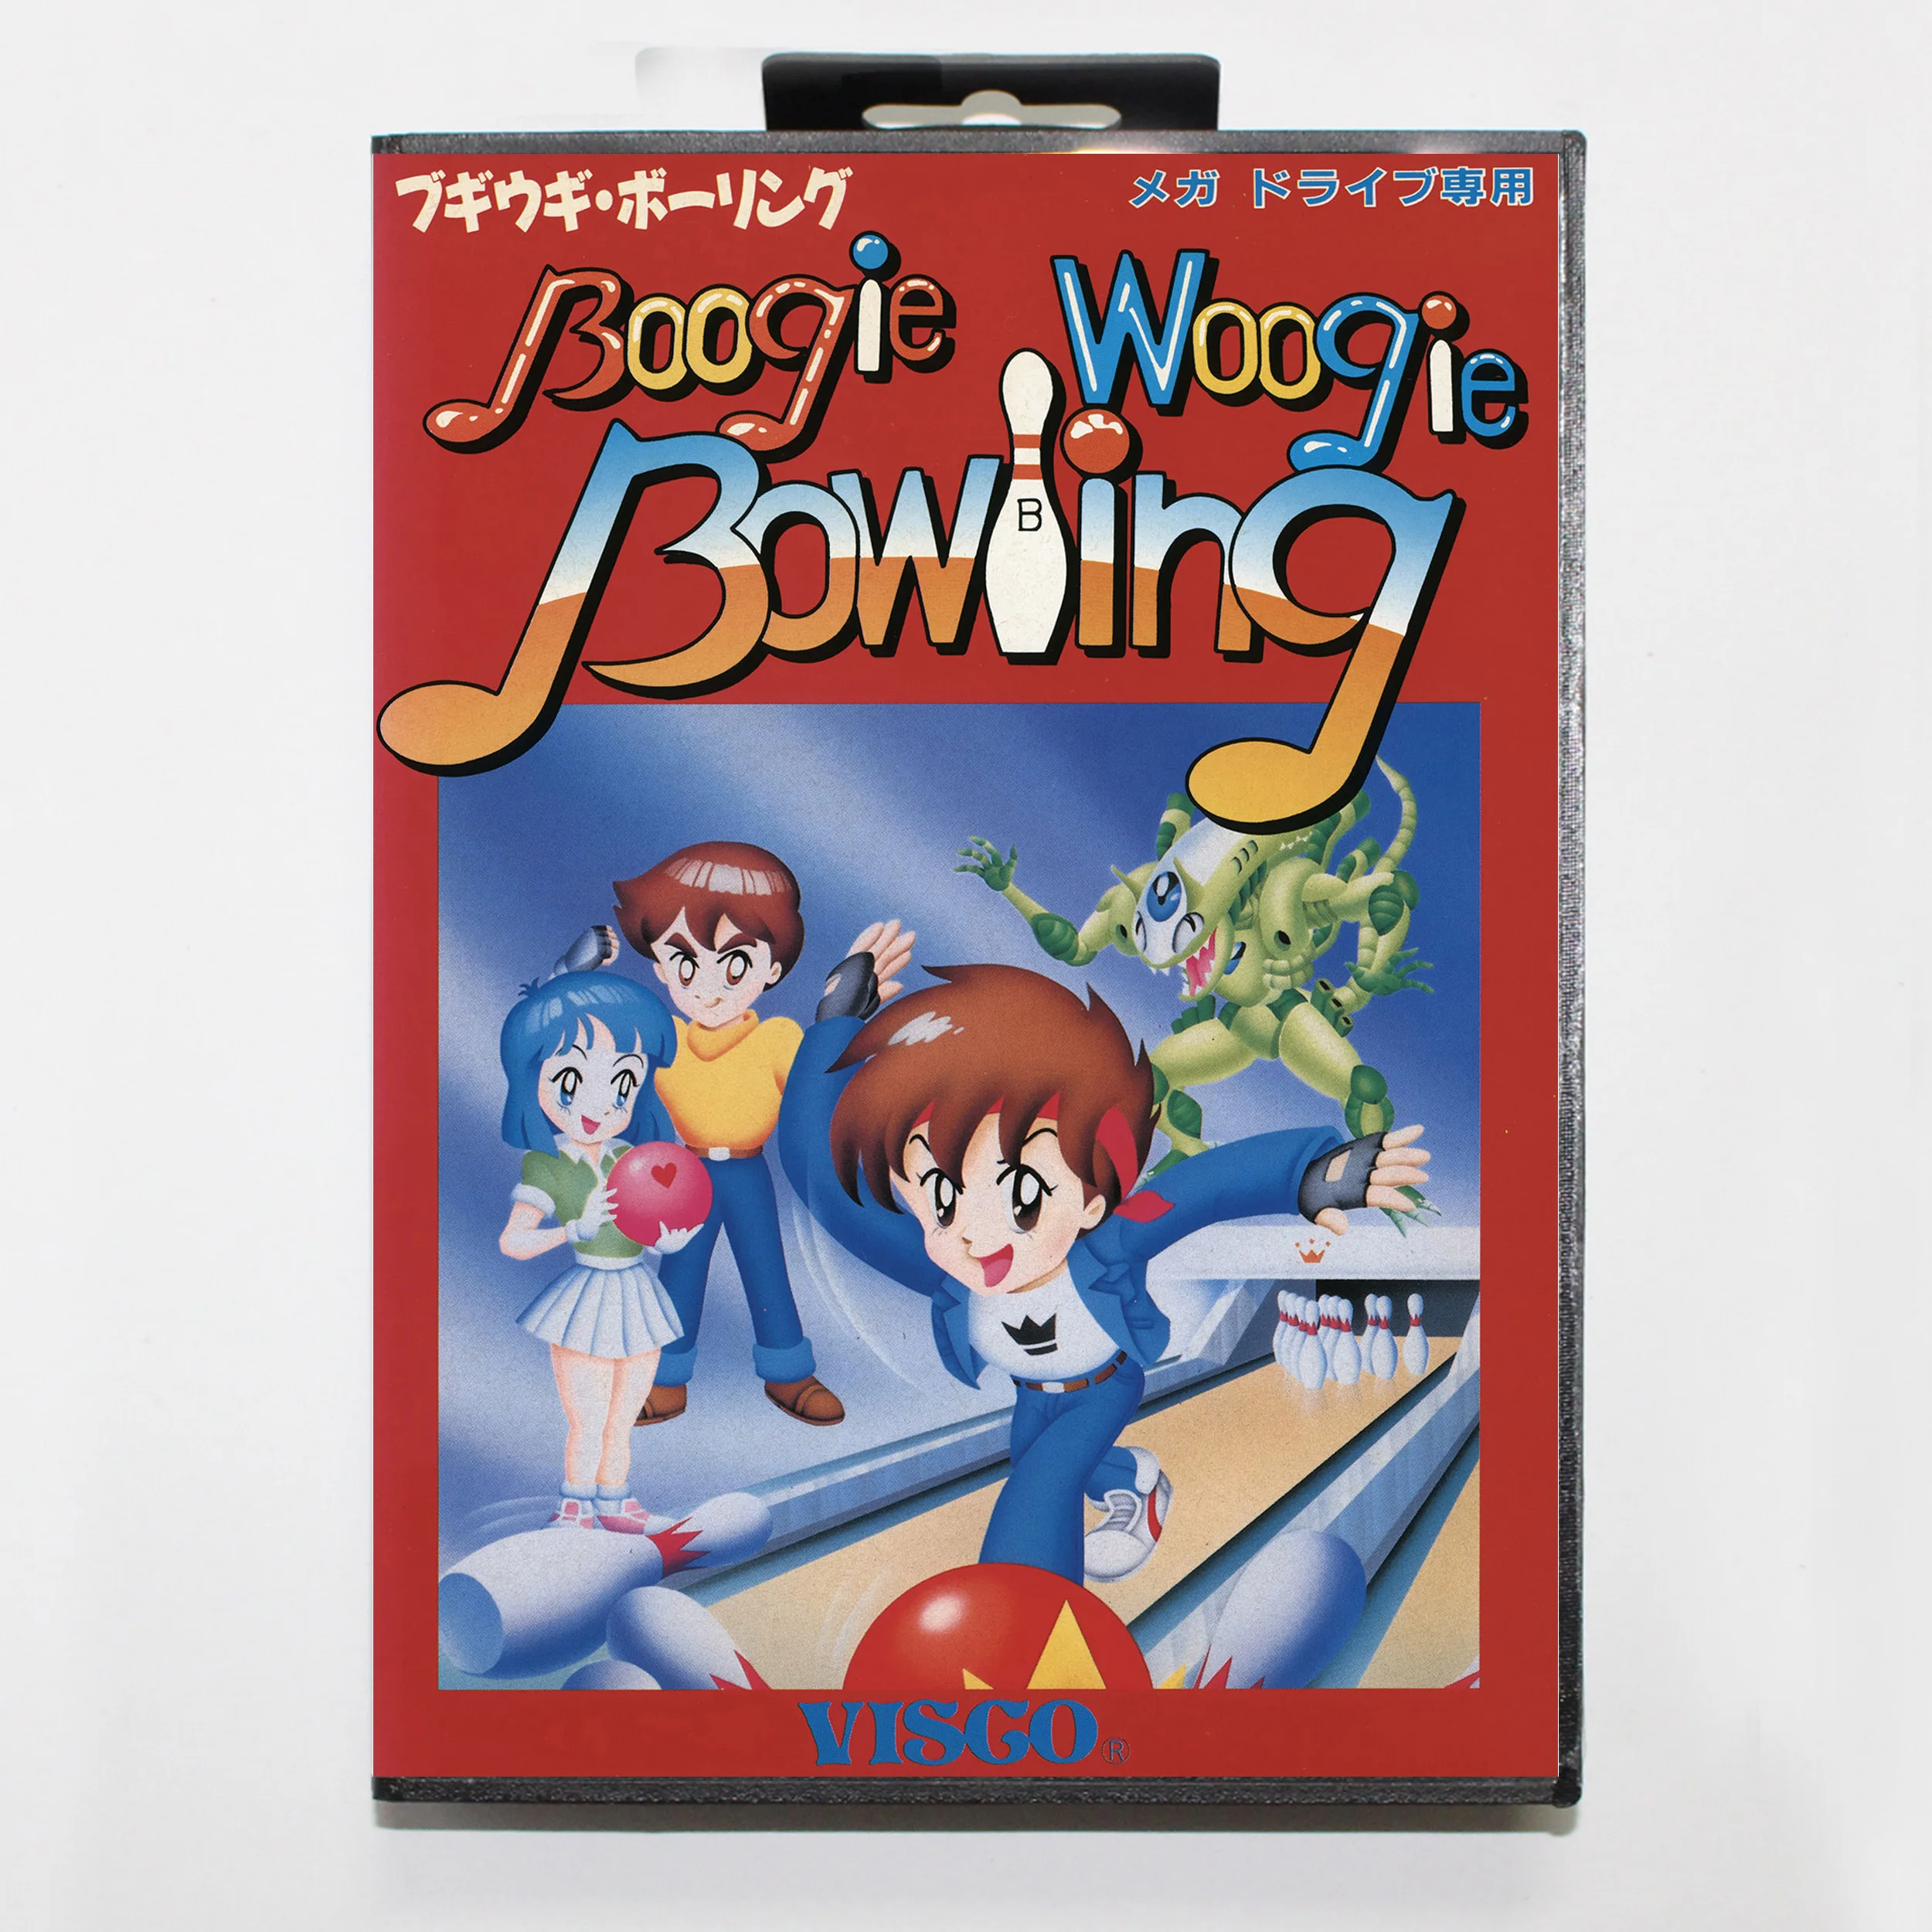 

Игровая карта Boogie Woogie для боулинга 16 бит MD для Sega Mega Drive/ Genesis с чехлом JP, Розничная коробка